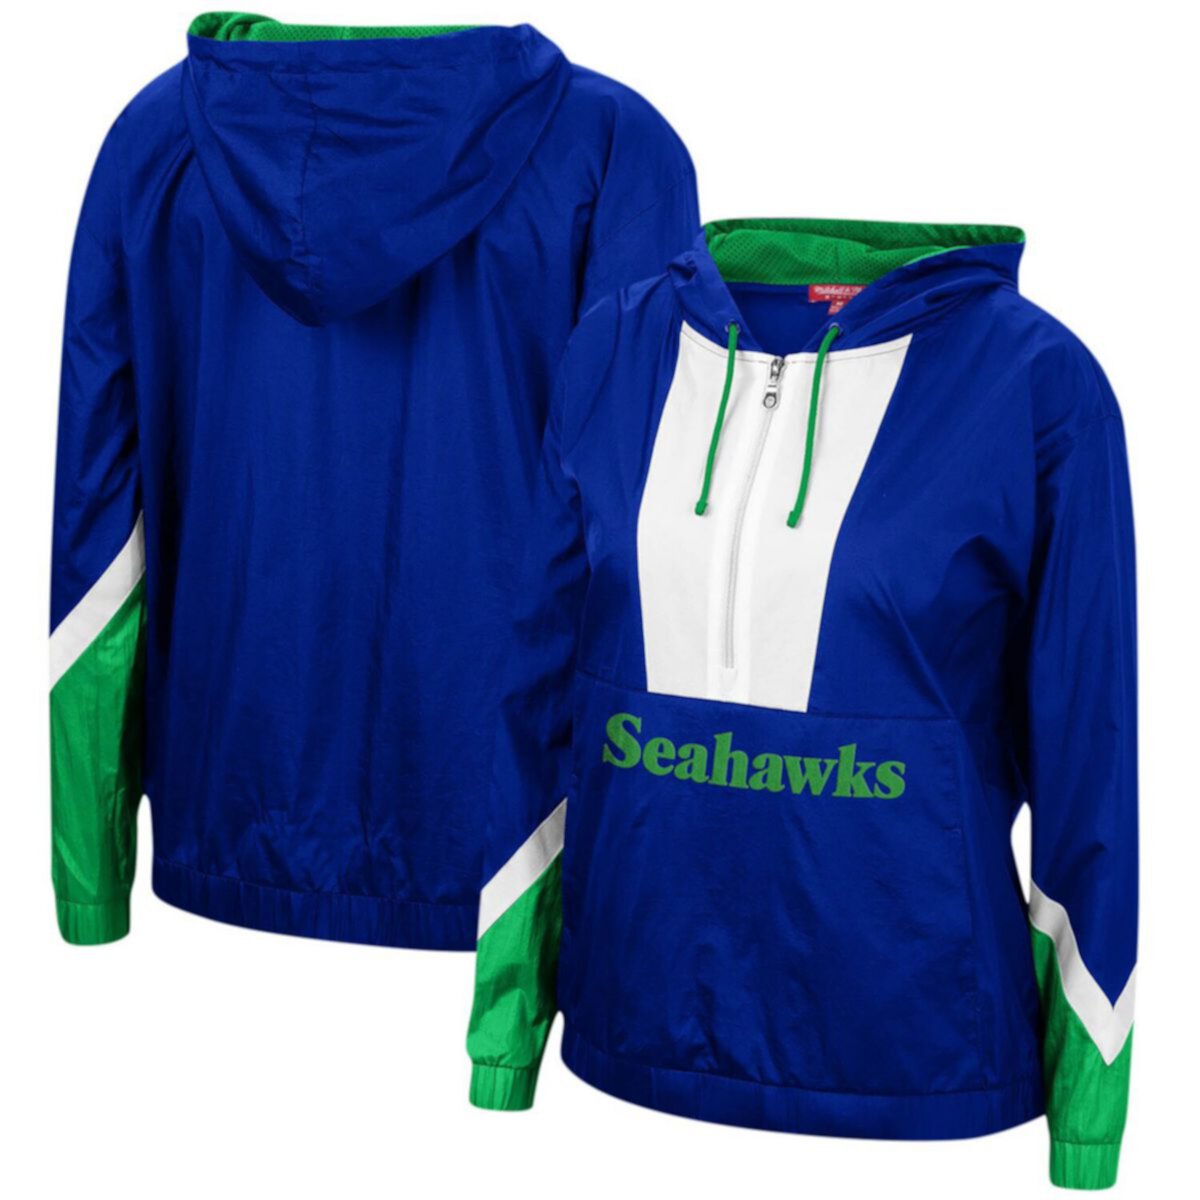 Женская ветровка с капюшоном Mitchell & Ness Royal Seattle Seahawks с молнией до половины Unbranded